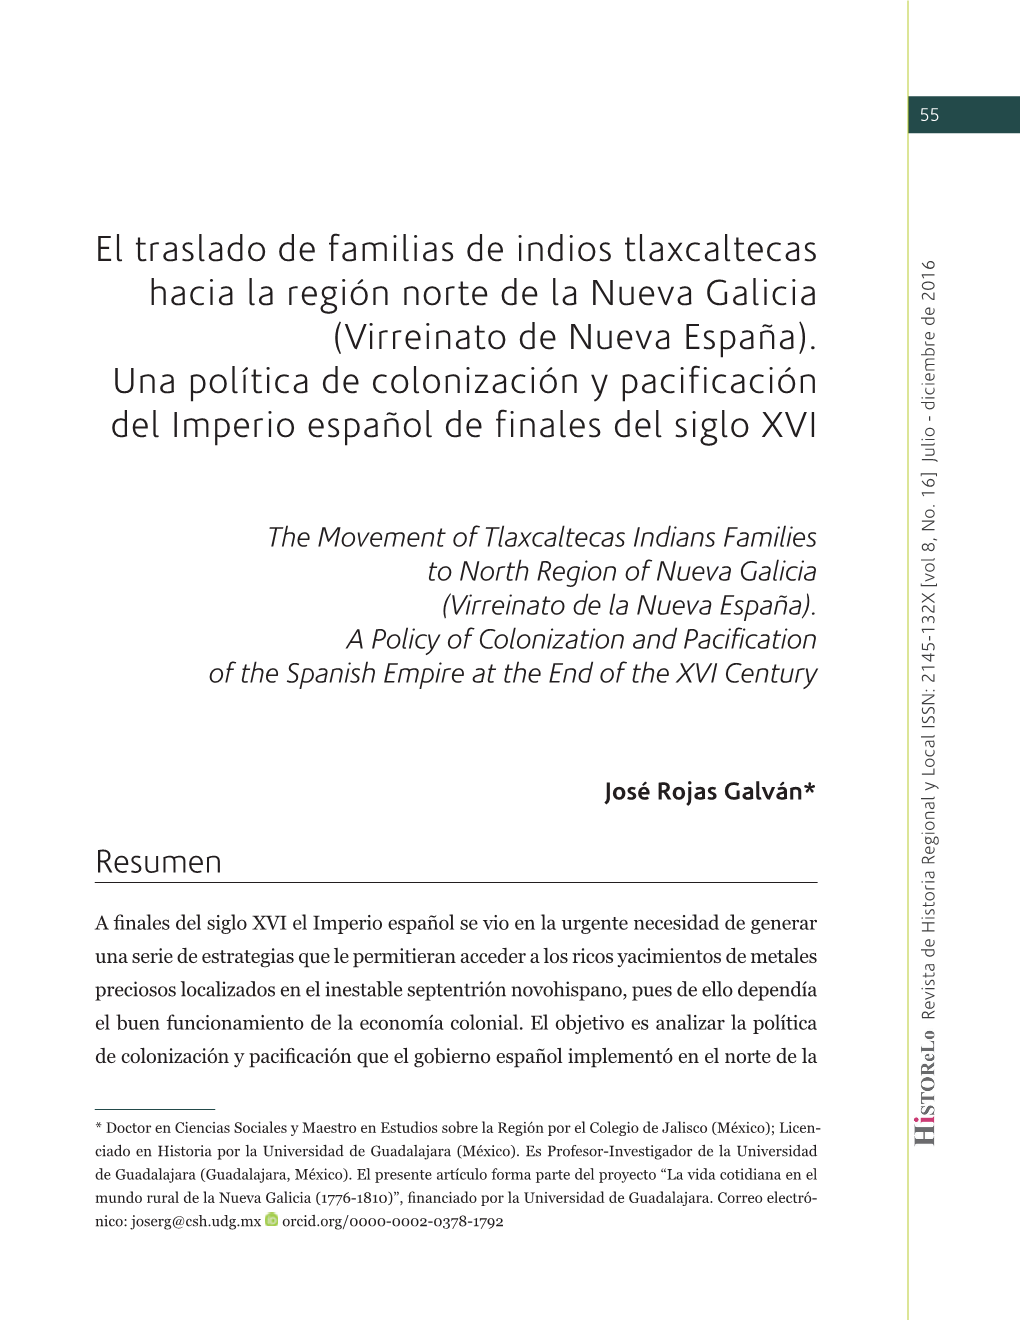 El Traslado De Familias De Indios Tlaxcaltecas Hacia La Región Norte De La Nueva Galicia (Virreinato De Nueva España)